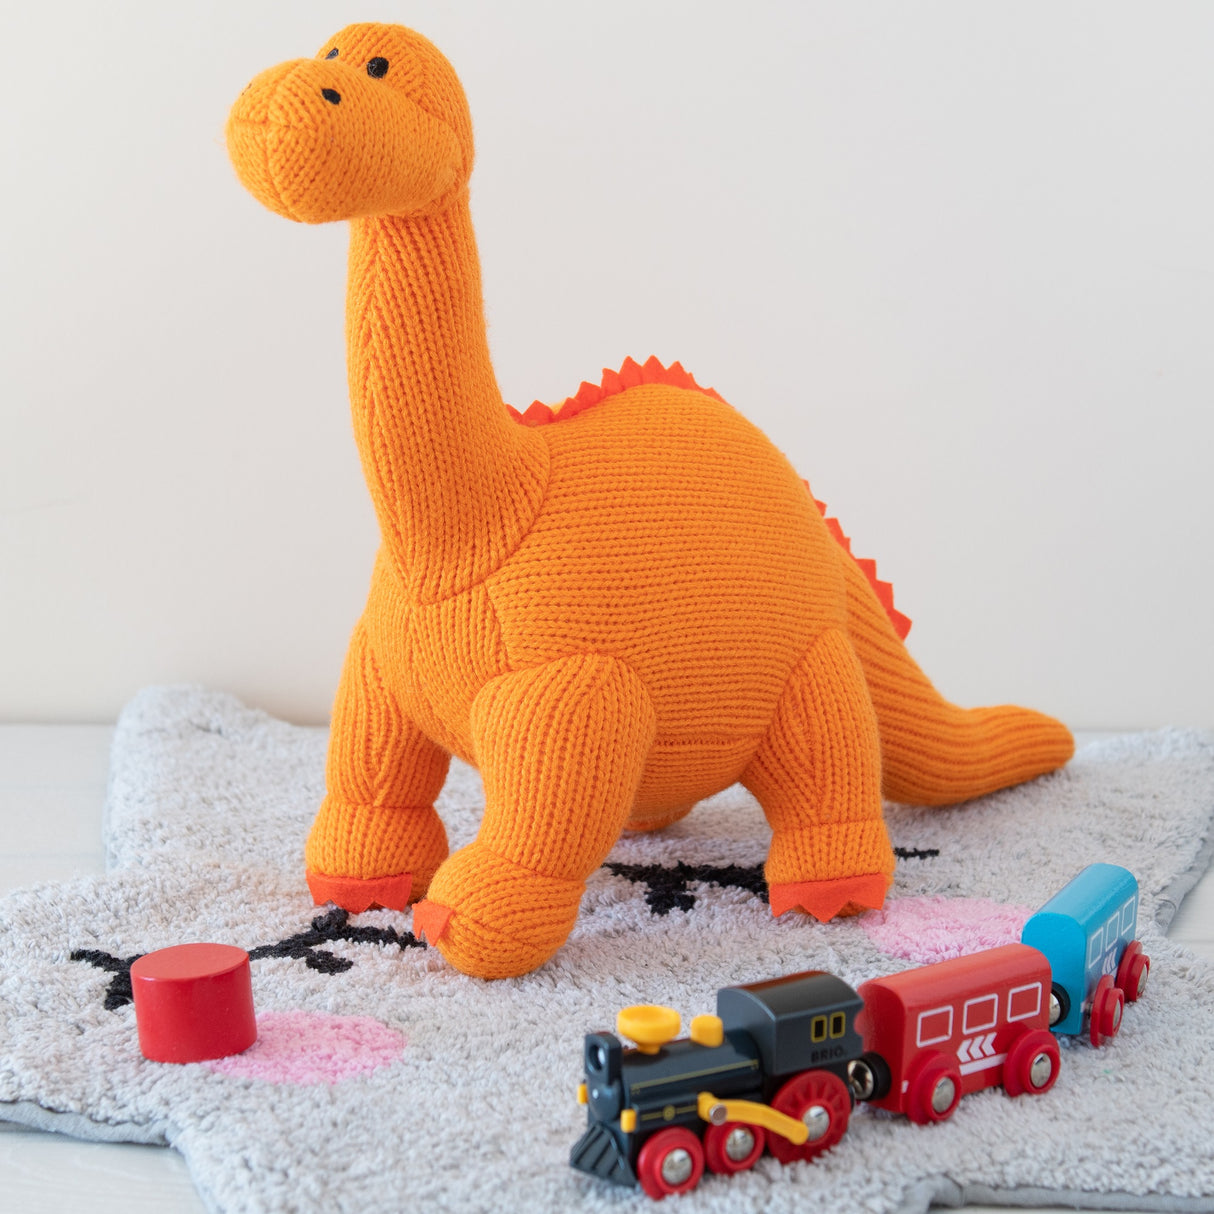 Diplodocus Dinosaur Soft Toy Large - Knitted Organic Cotton - Large - Orange